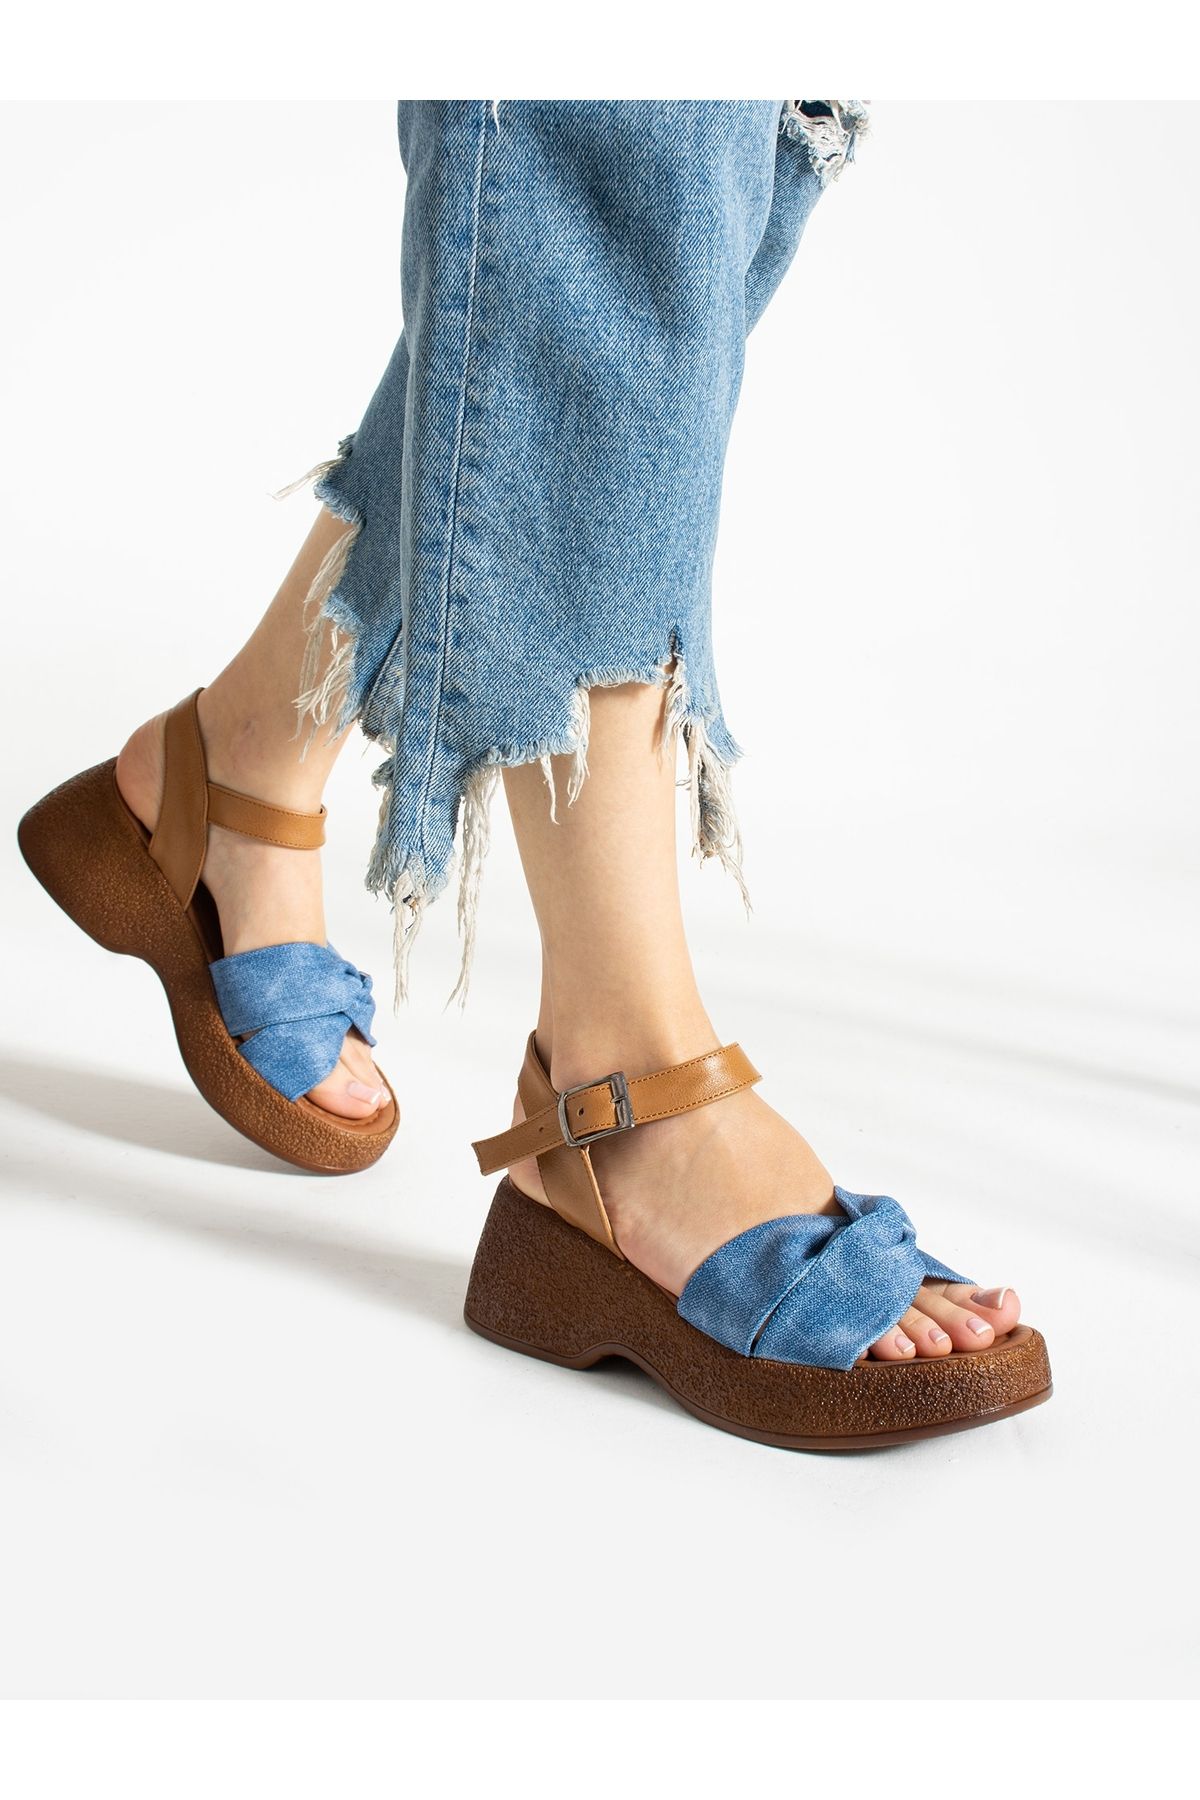 Alemdar Shoes CORA Kot Mavi Kadın Sandalet